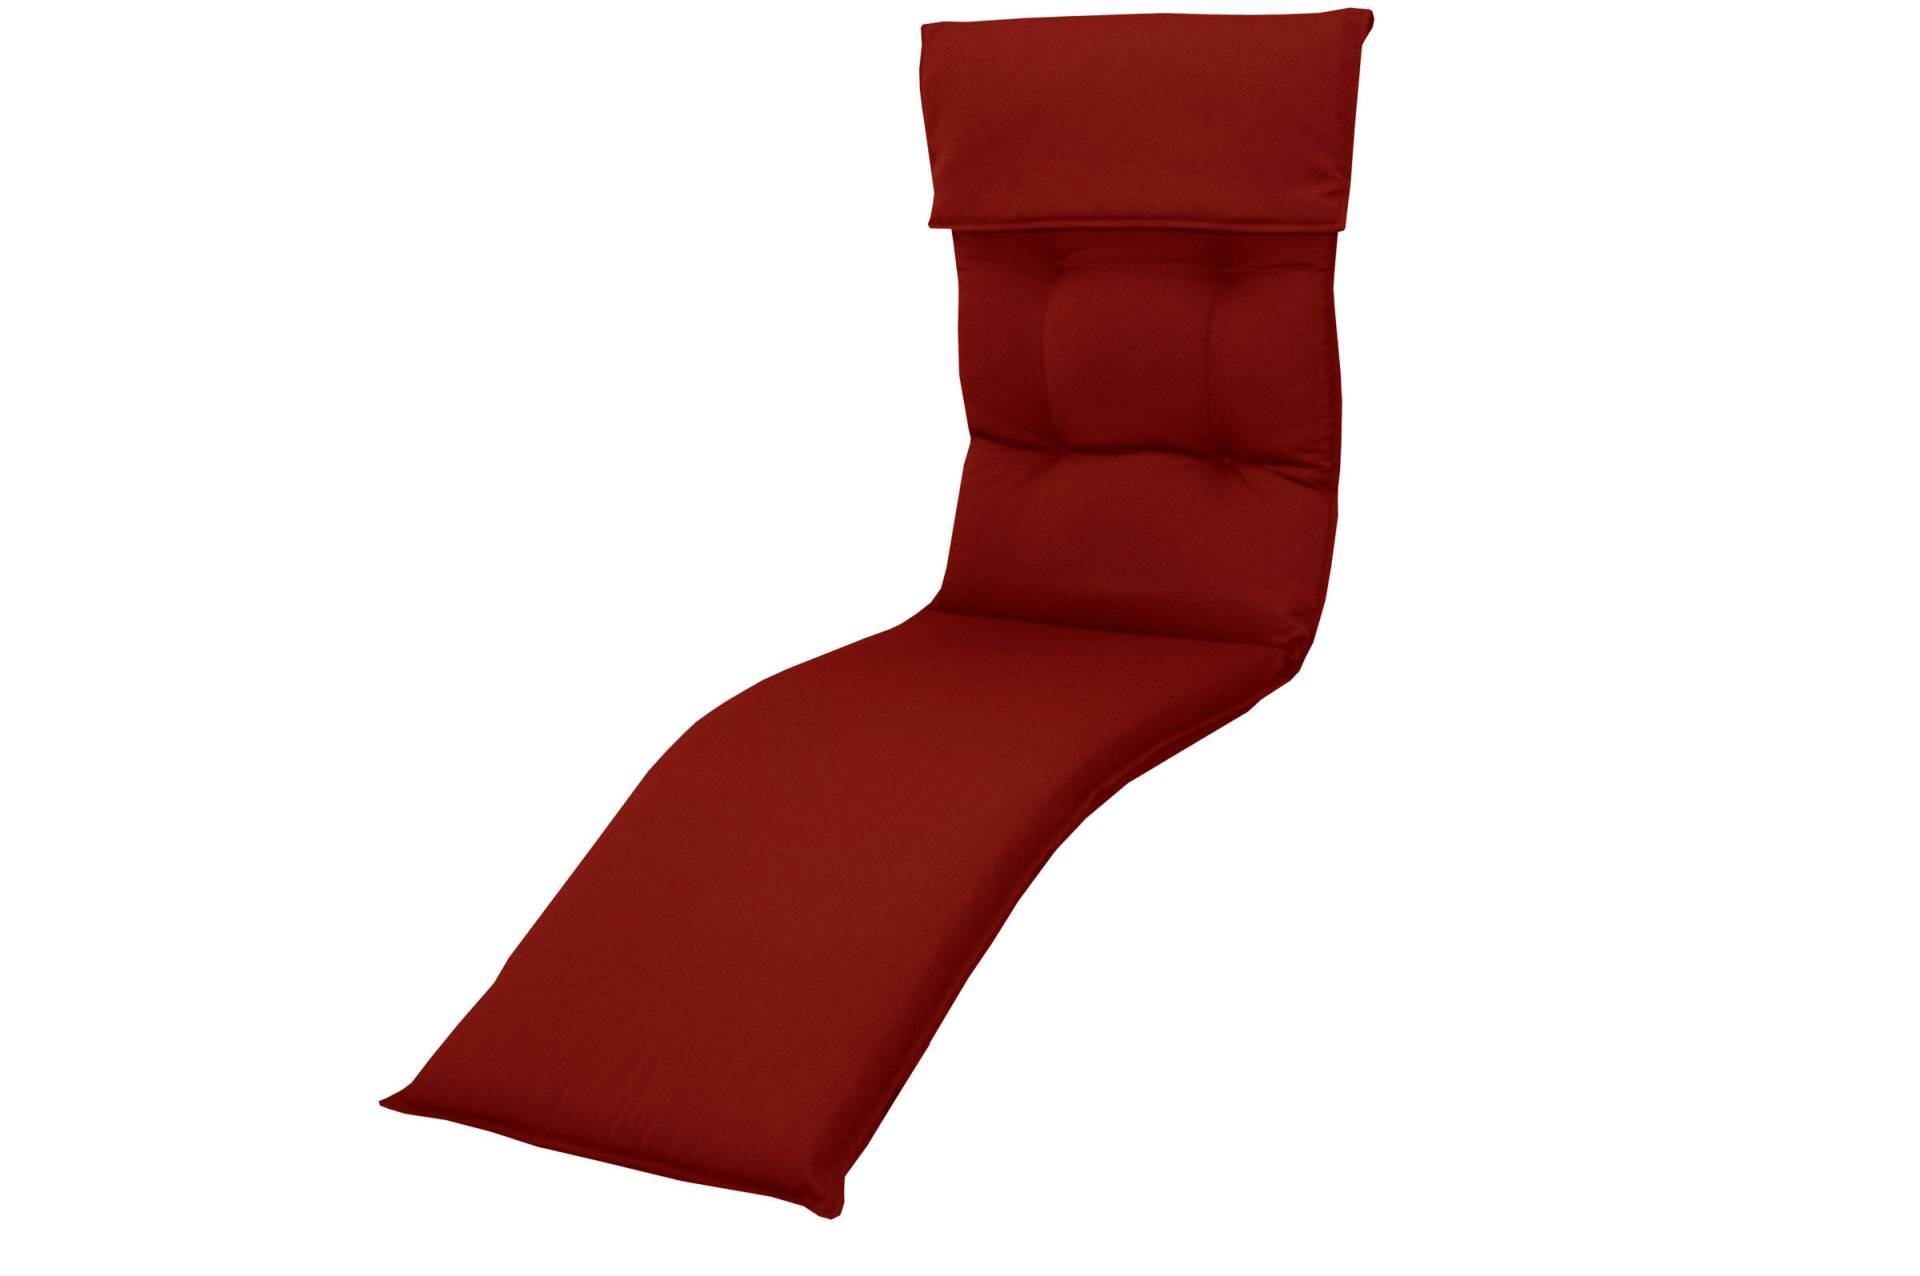 DOPPLER Relax Style Relaxsesselauflage, bordeaux, Dralon, 175 x 45,5 x 7 cm, inklusive Befestigungsbänder von Doppler